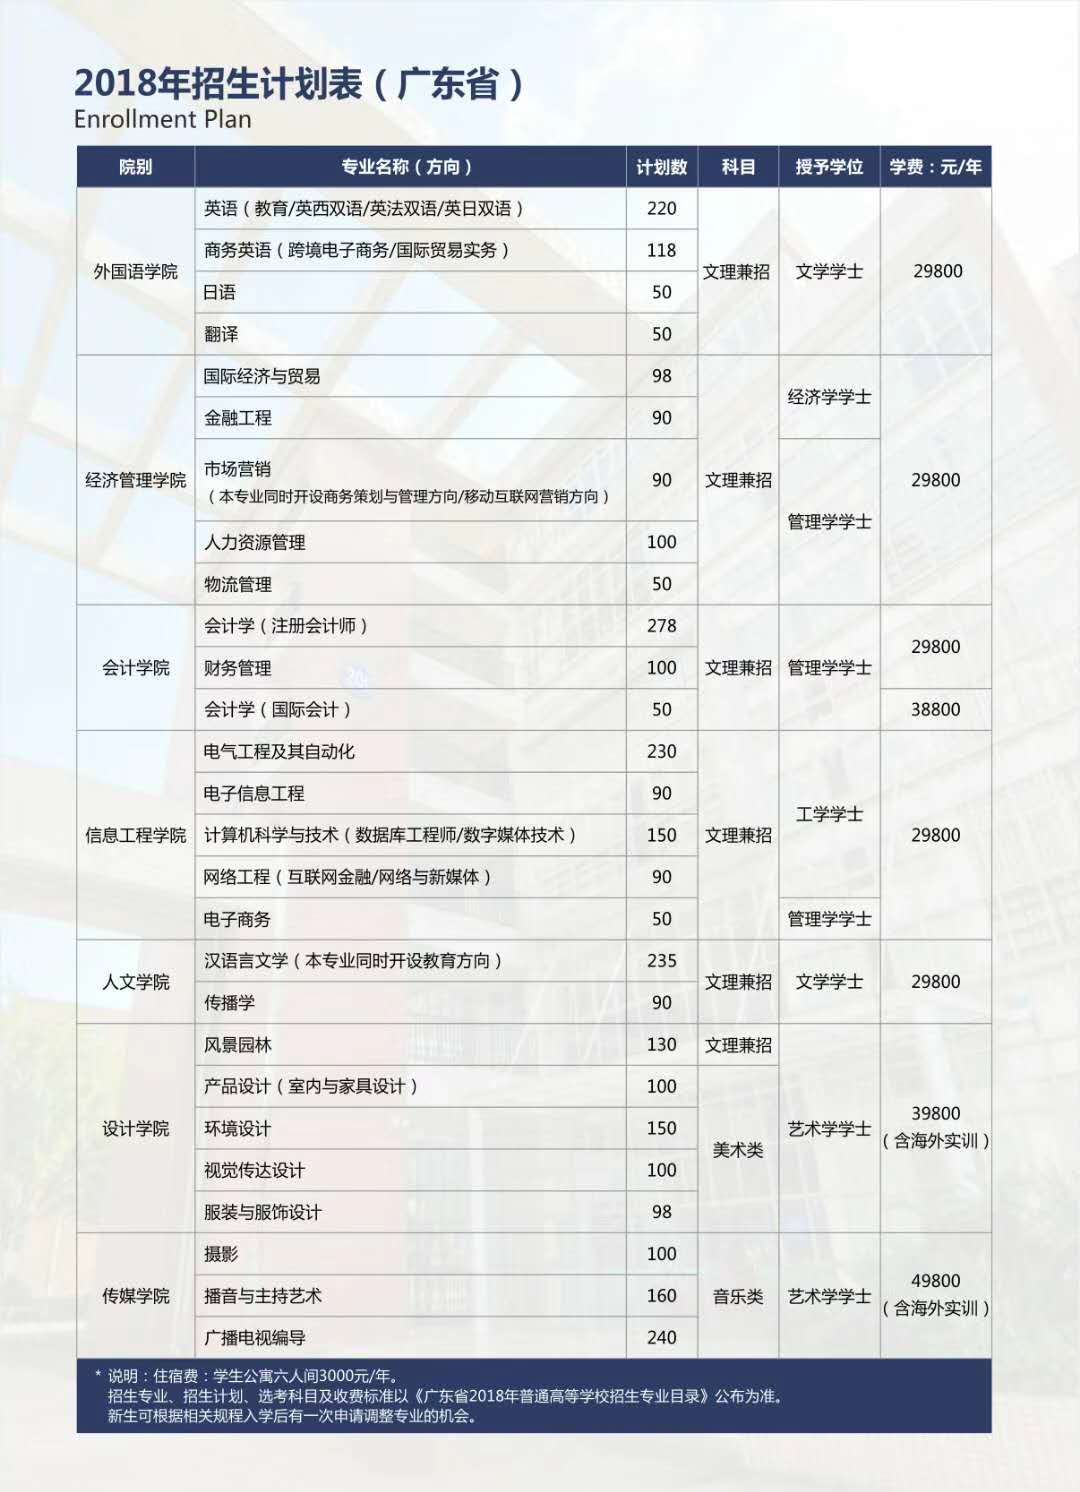 華南農業大學珠江學院2018年招生計畫表